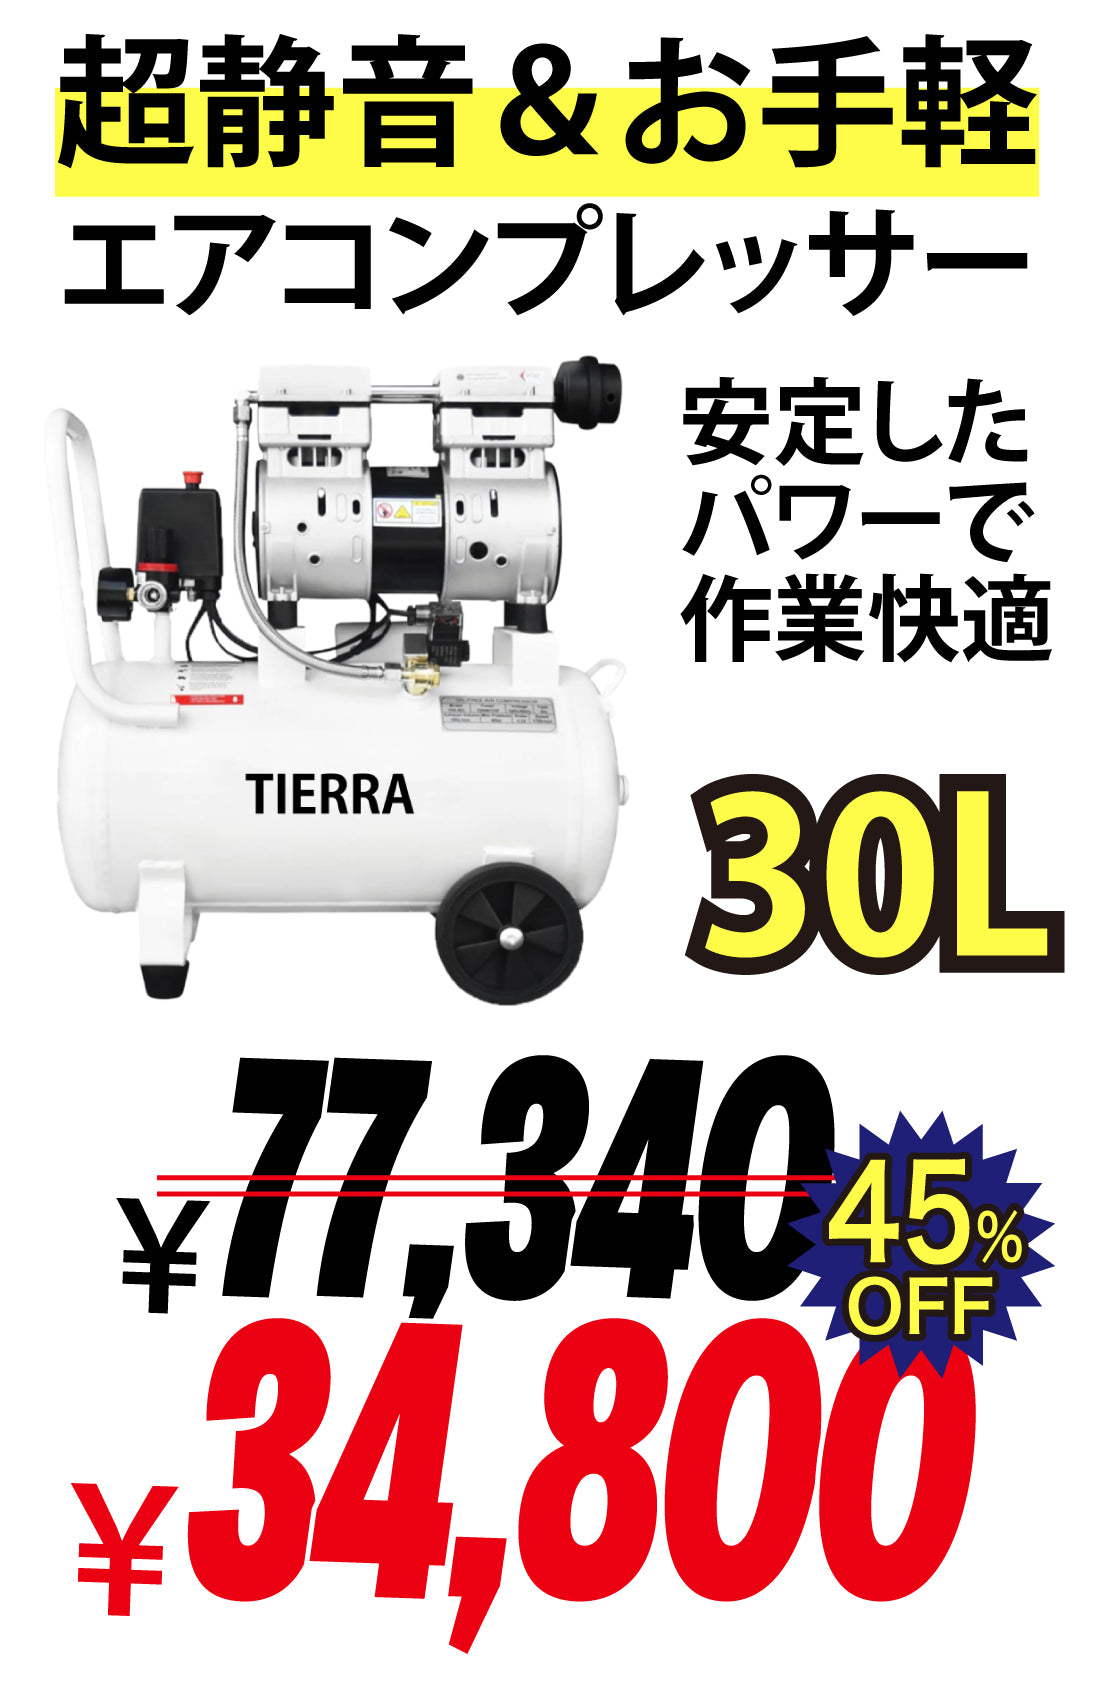 【売り尽くしセール中】TIERRA エアーコンプレッサー30L【即日発送】